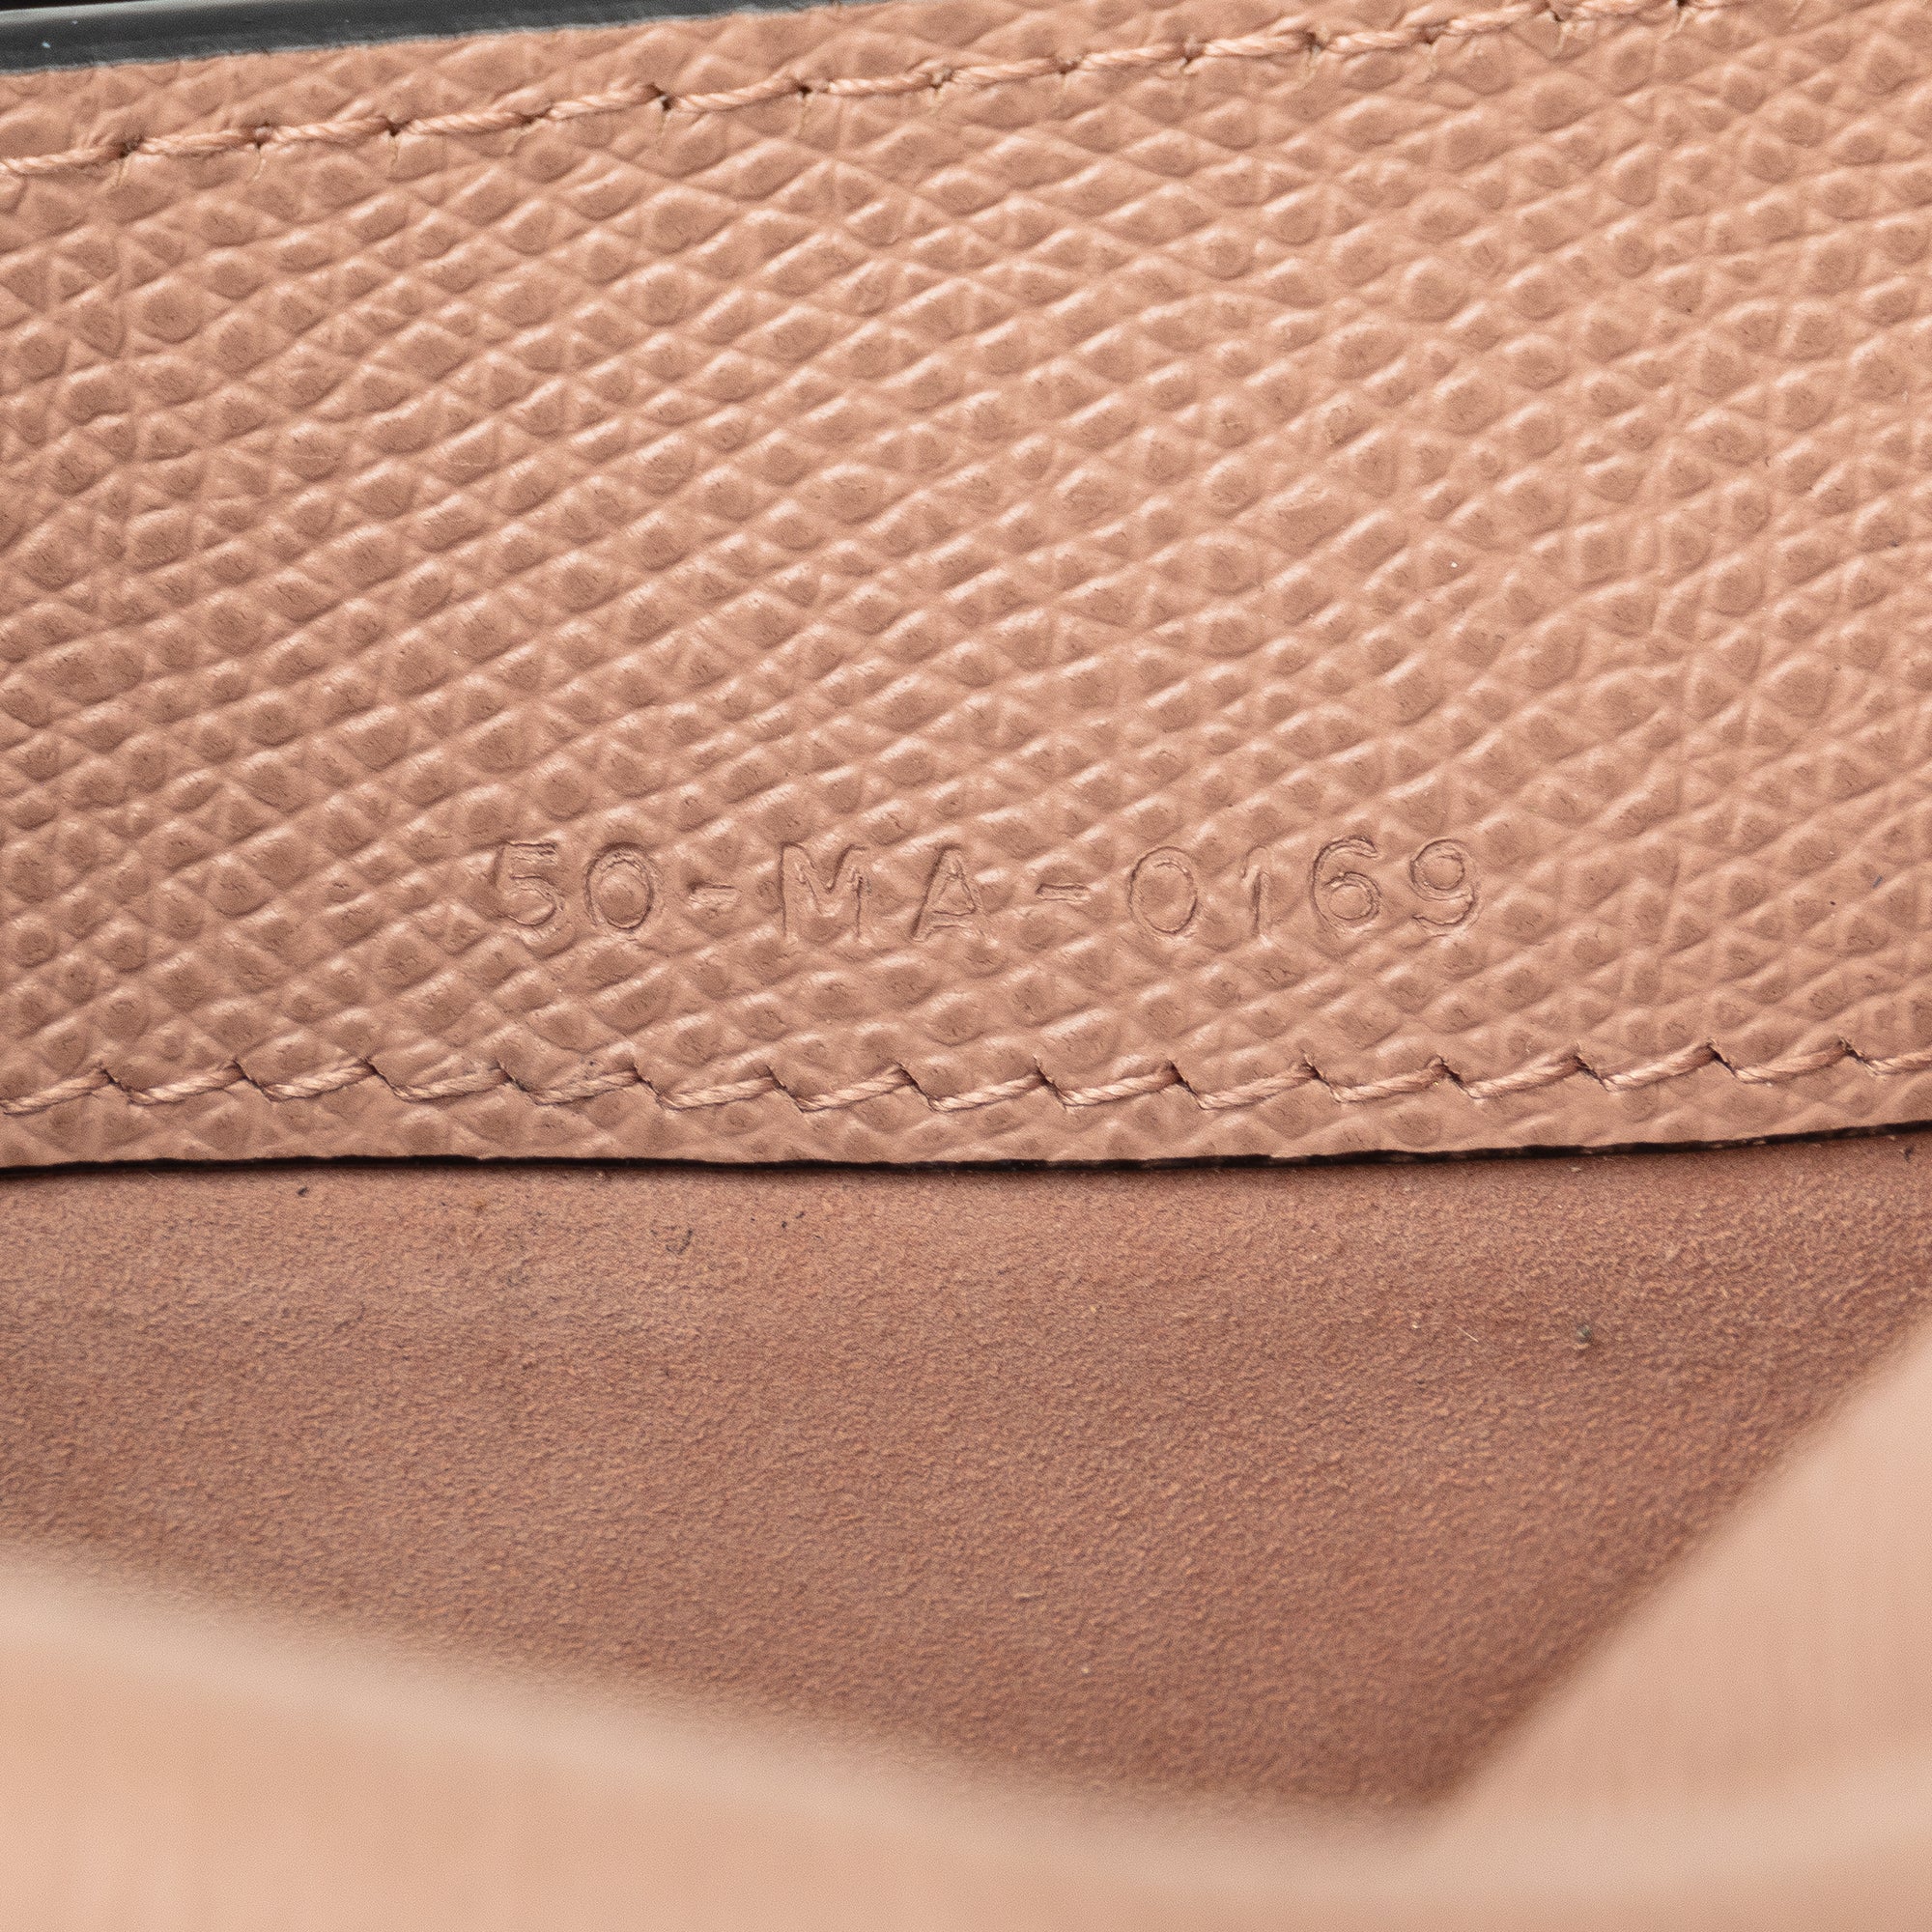 Leather Saddle Belt Bag_6